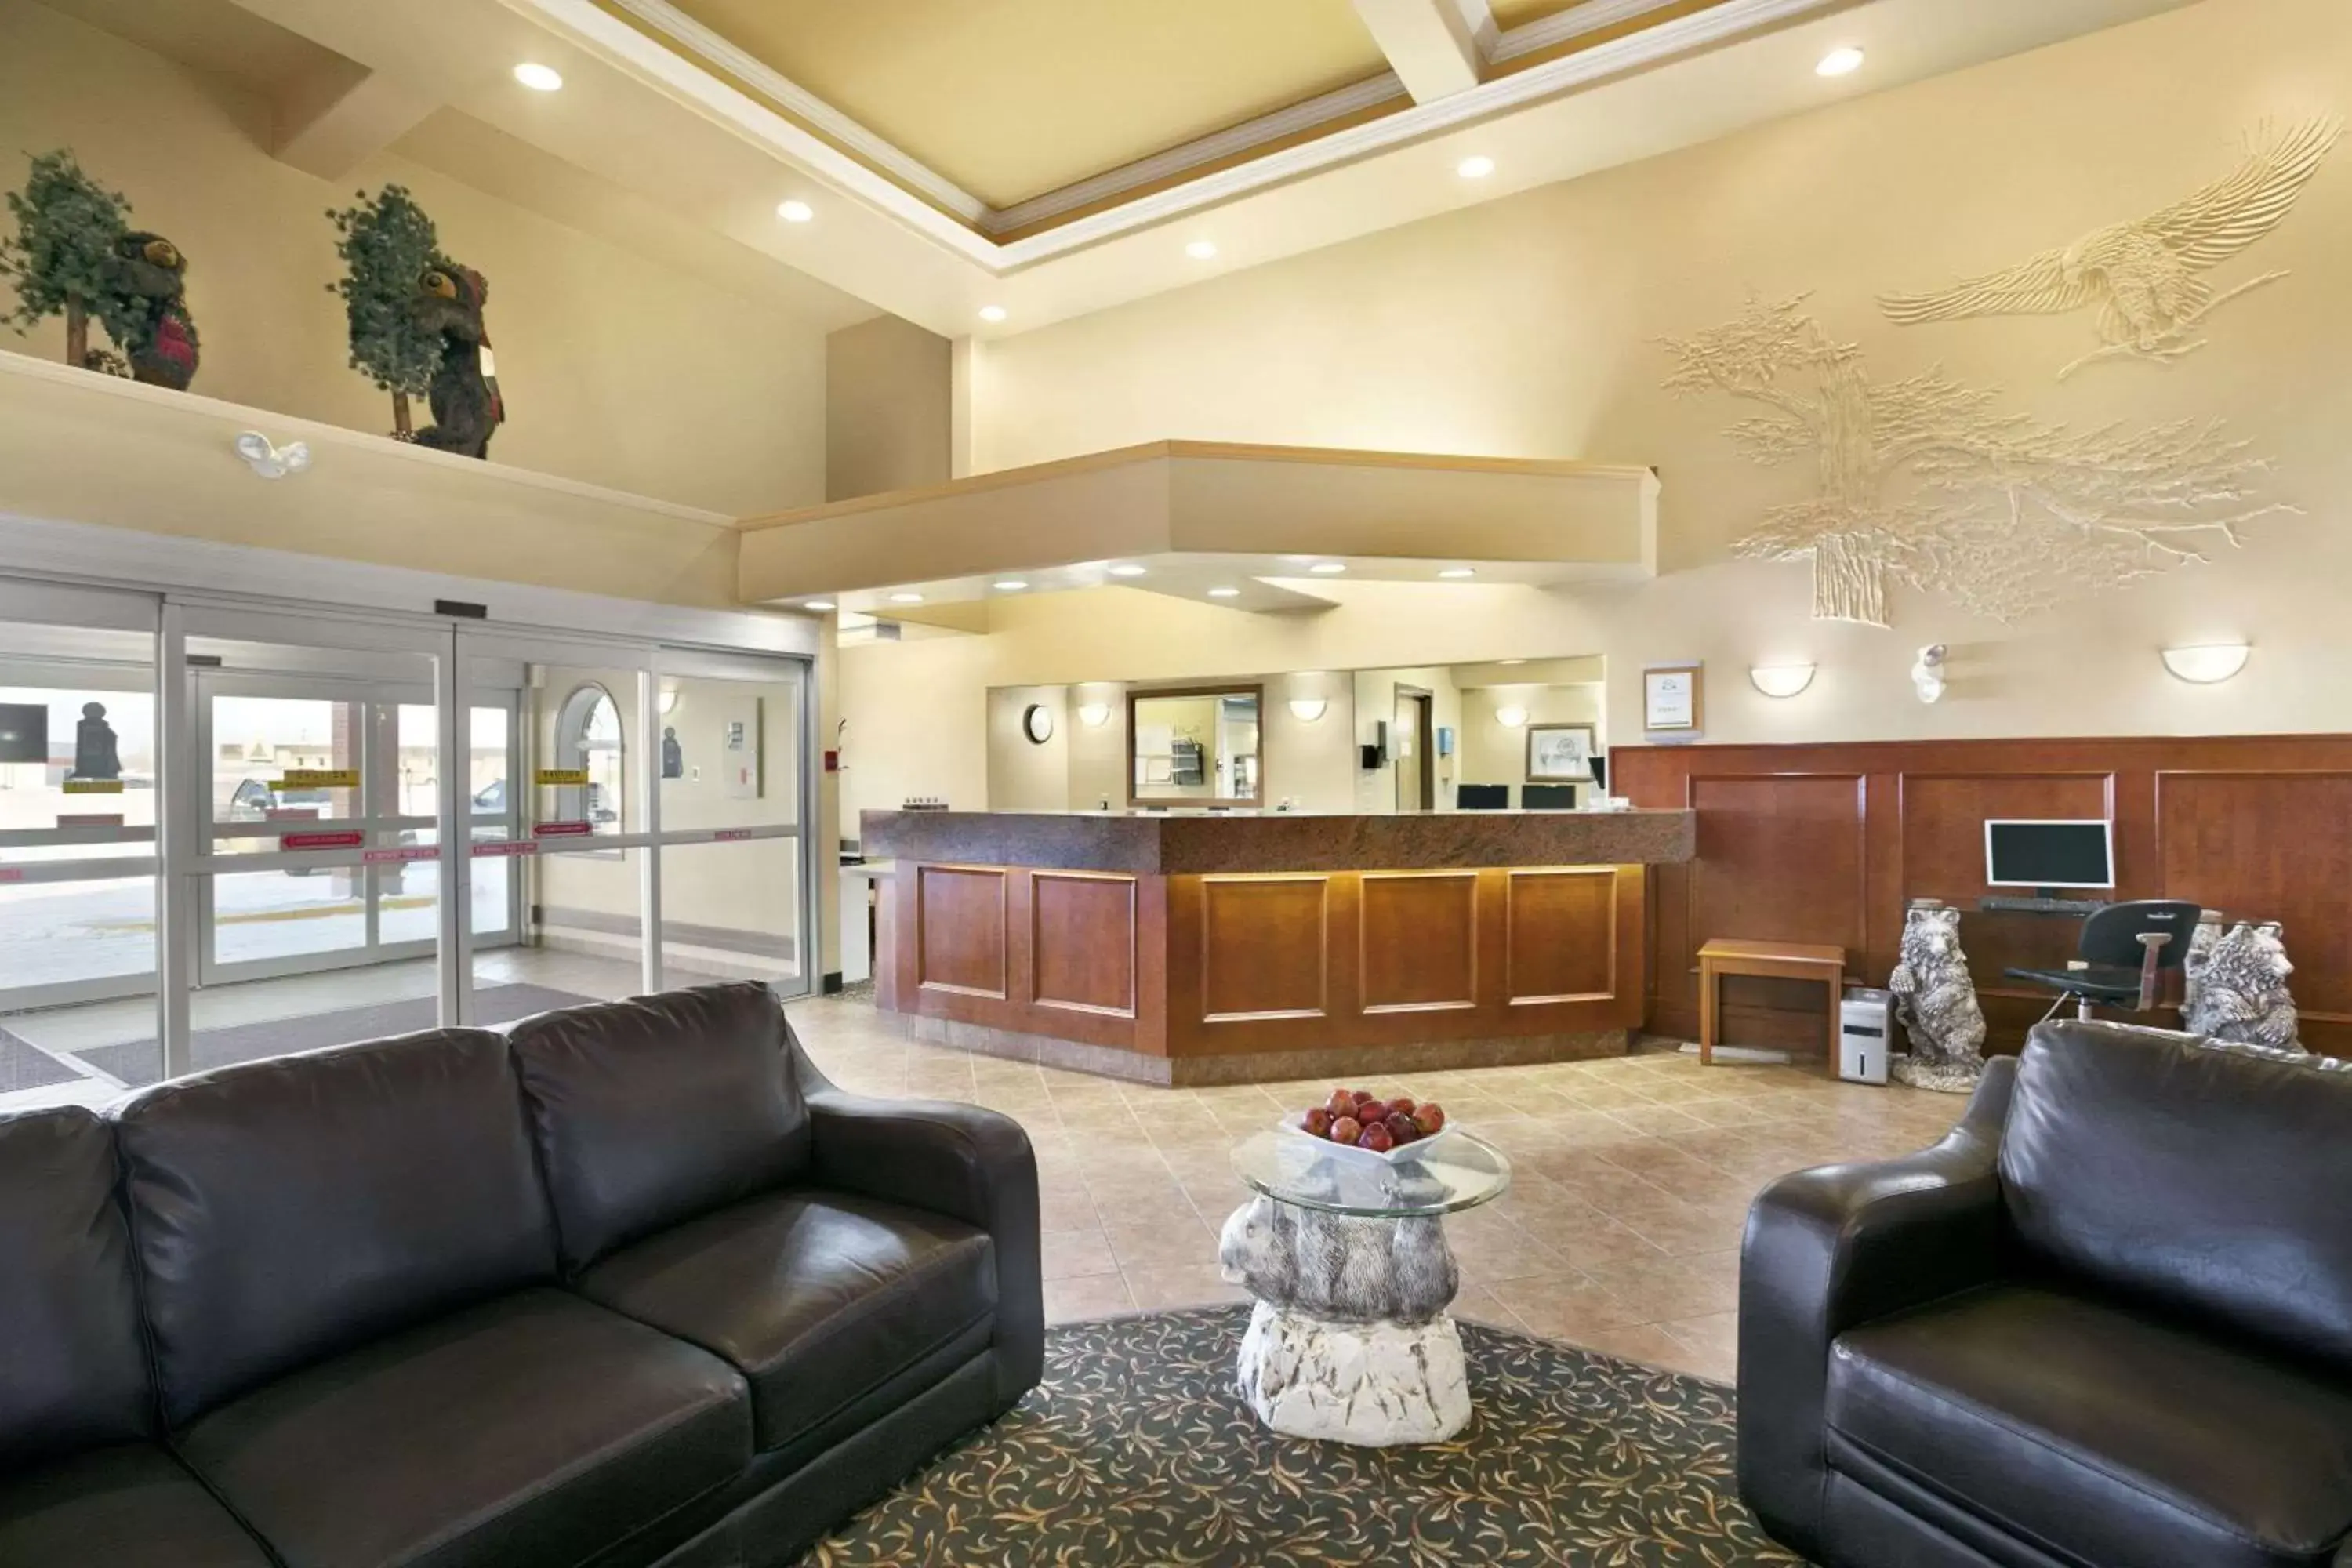 Lobby or reception, Lobby/Reception in Super 8 by Wyndham High Level AB